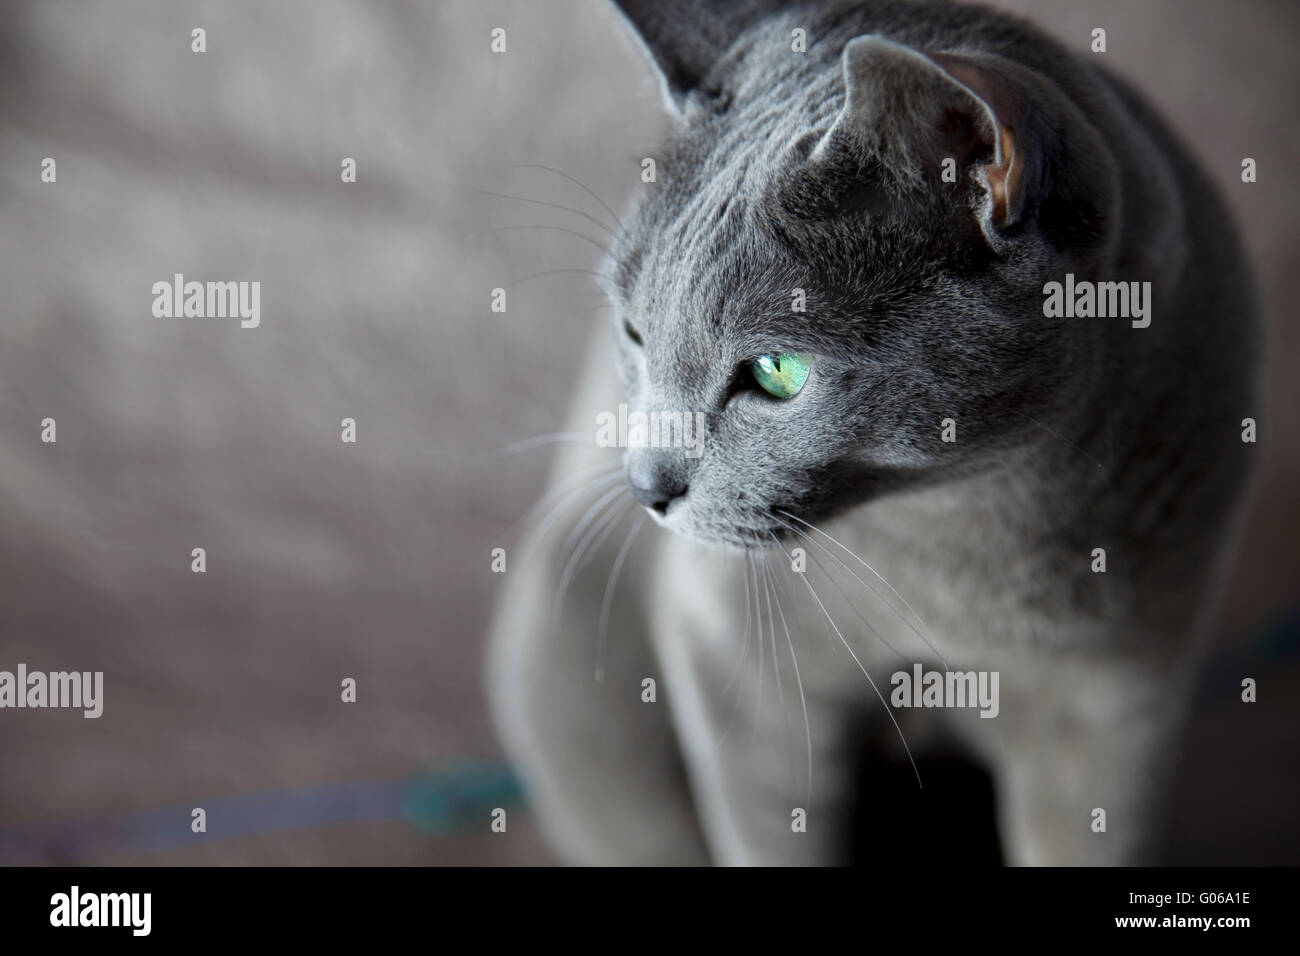 Portrait d'un chat bleu russe, studio shot Banque D'Images